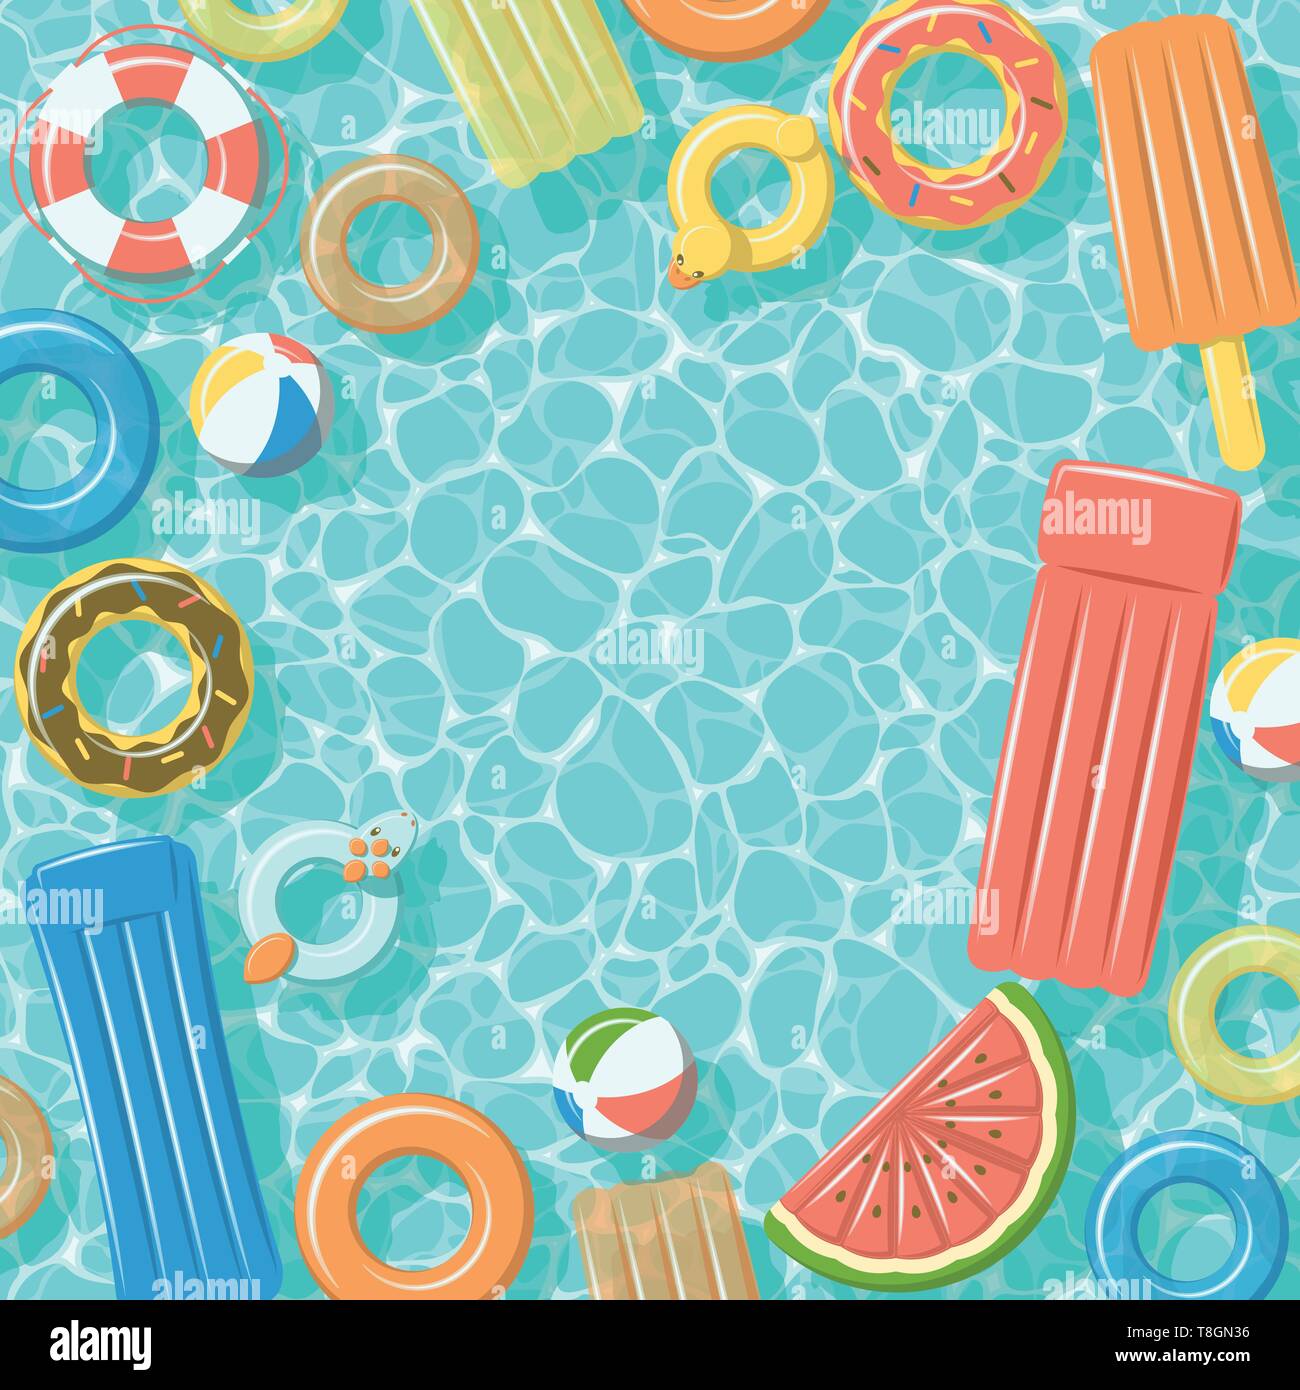 Piscine vue de dessus avec des anneaux en caoutchouc gonflables, des radeaux, ballon de plage et bouée Illustration de Vecteur